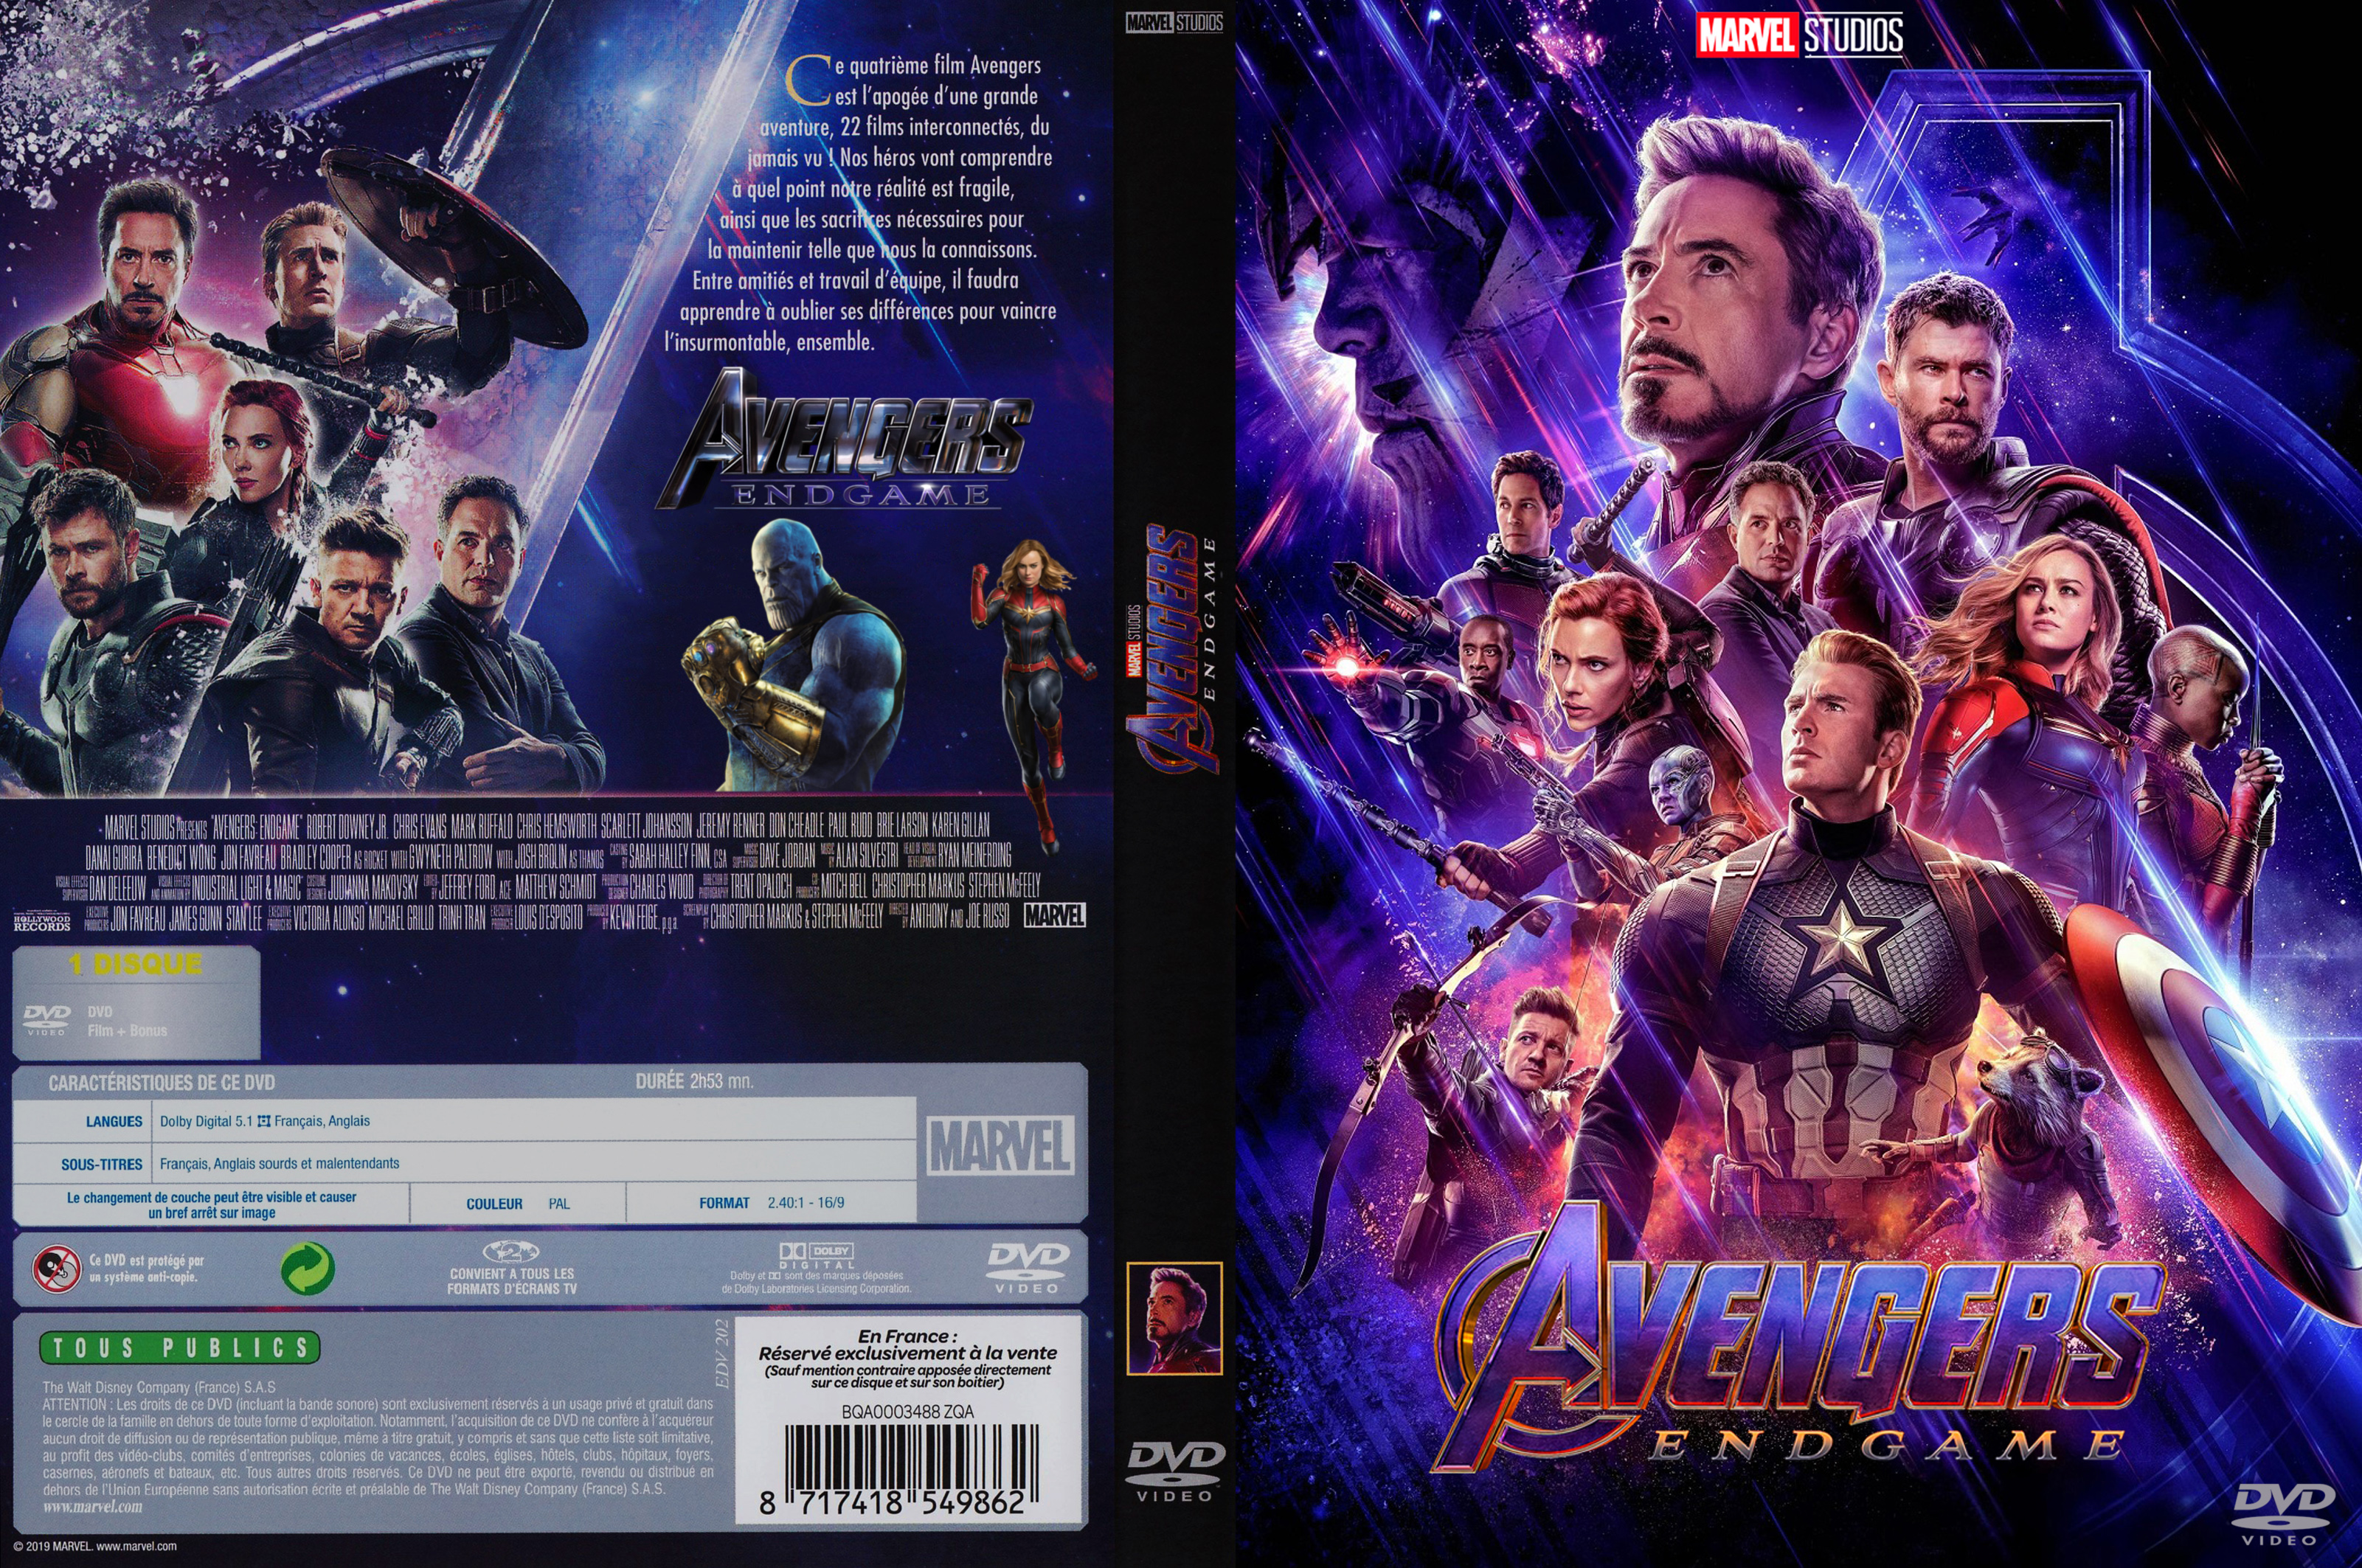 Jaquette DVD Avengers Endgame custom